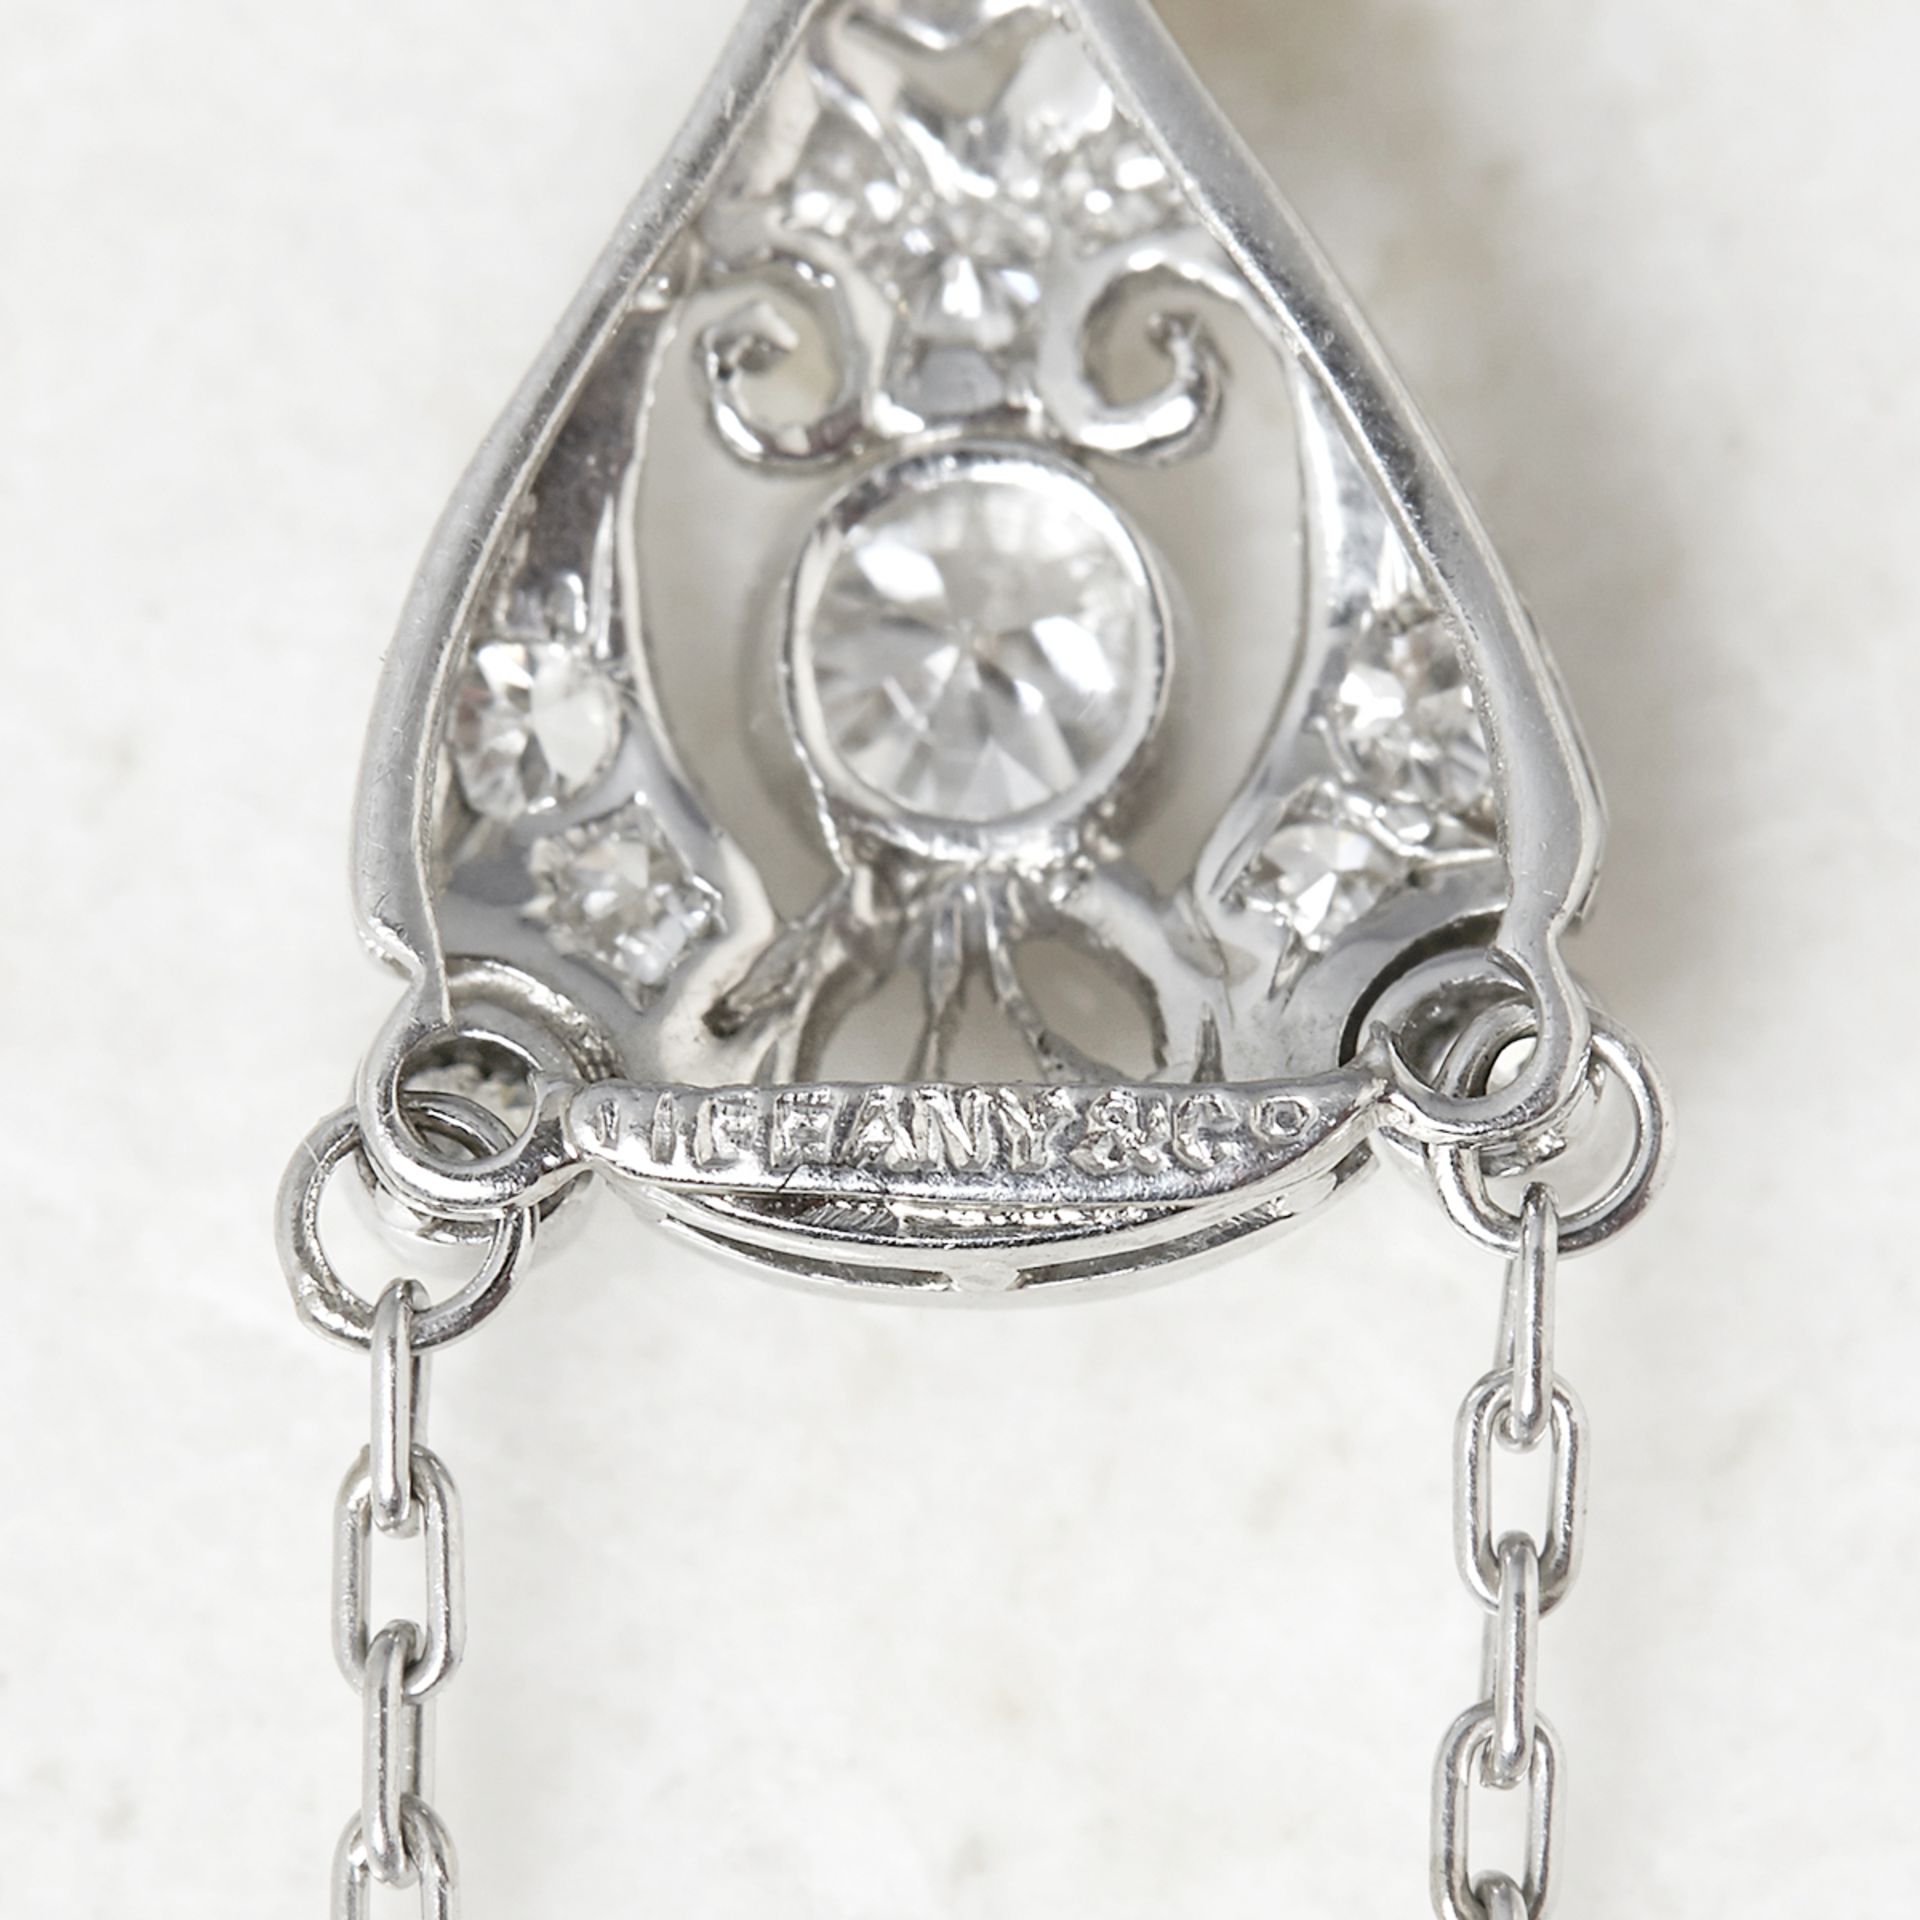 Tiffany & Co. Platinum Briolette Aquamarine & 0.35ct Diamond Edwardian Necklace with Tiffany Box - Image 4 of 6